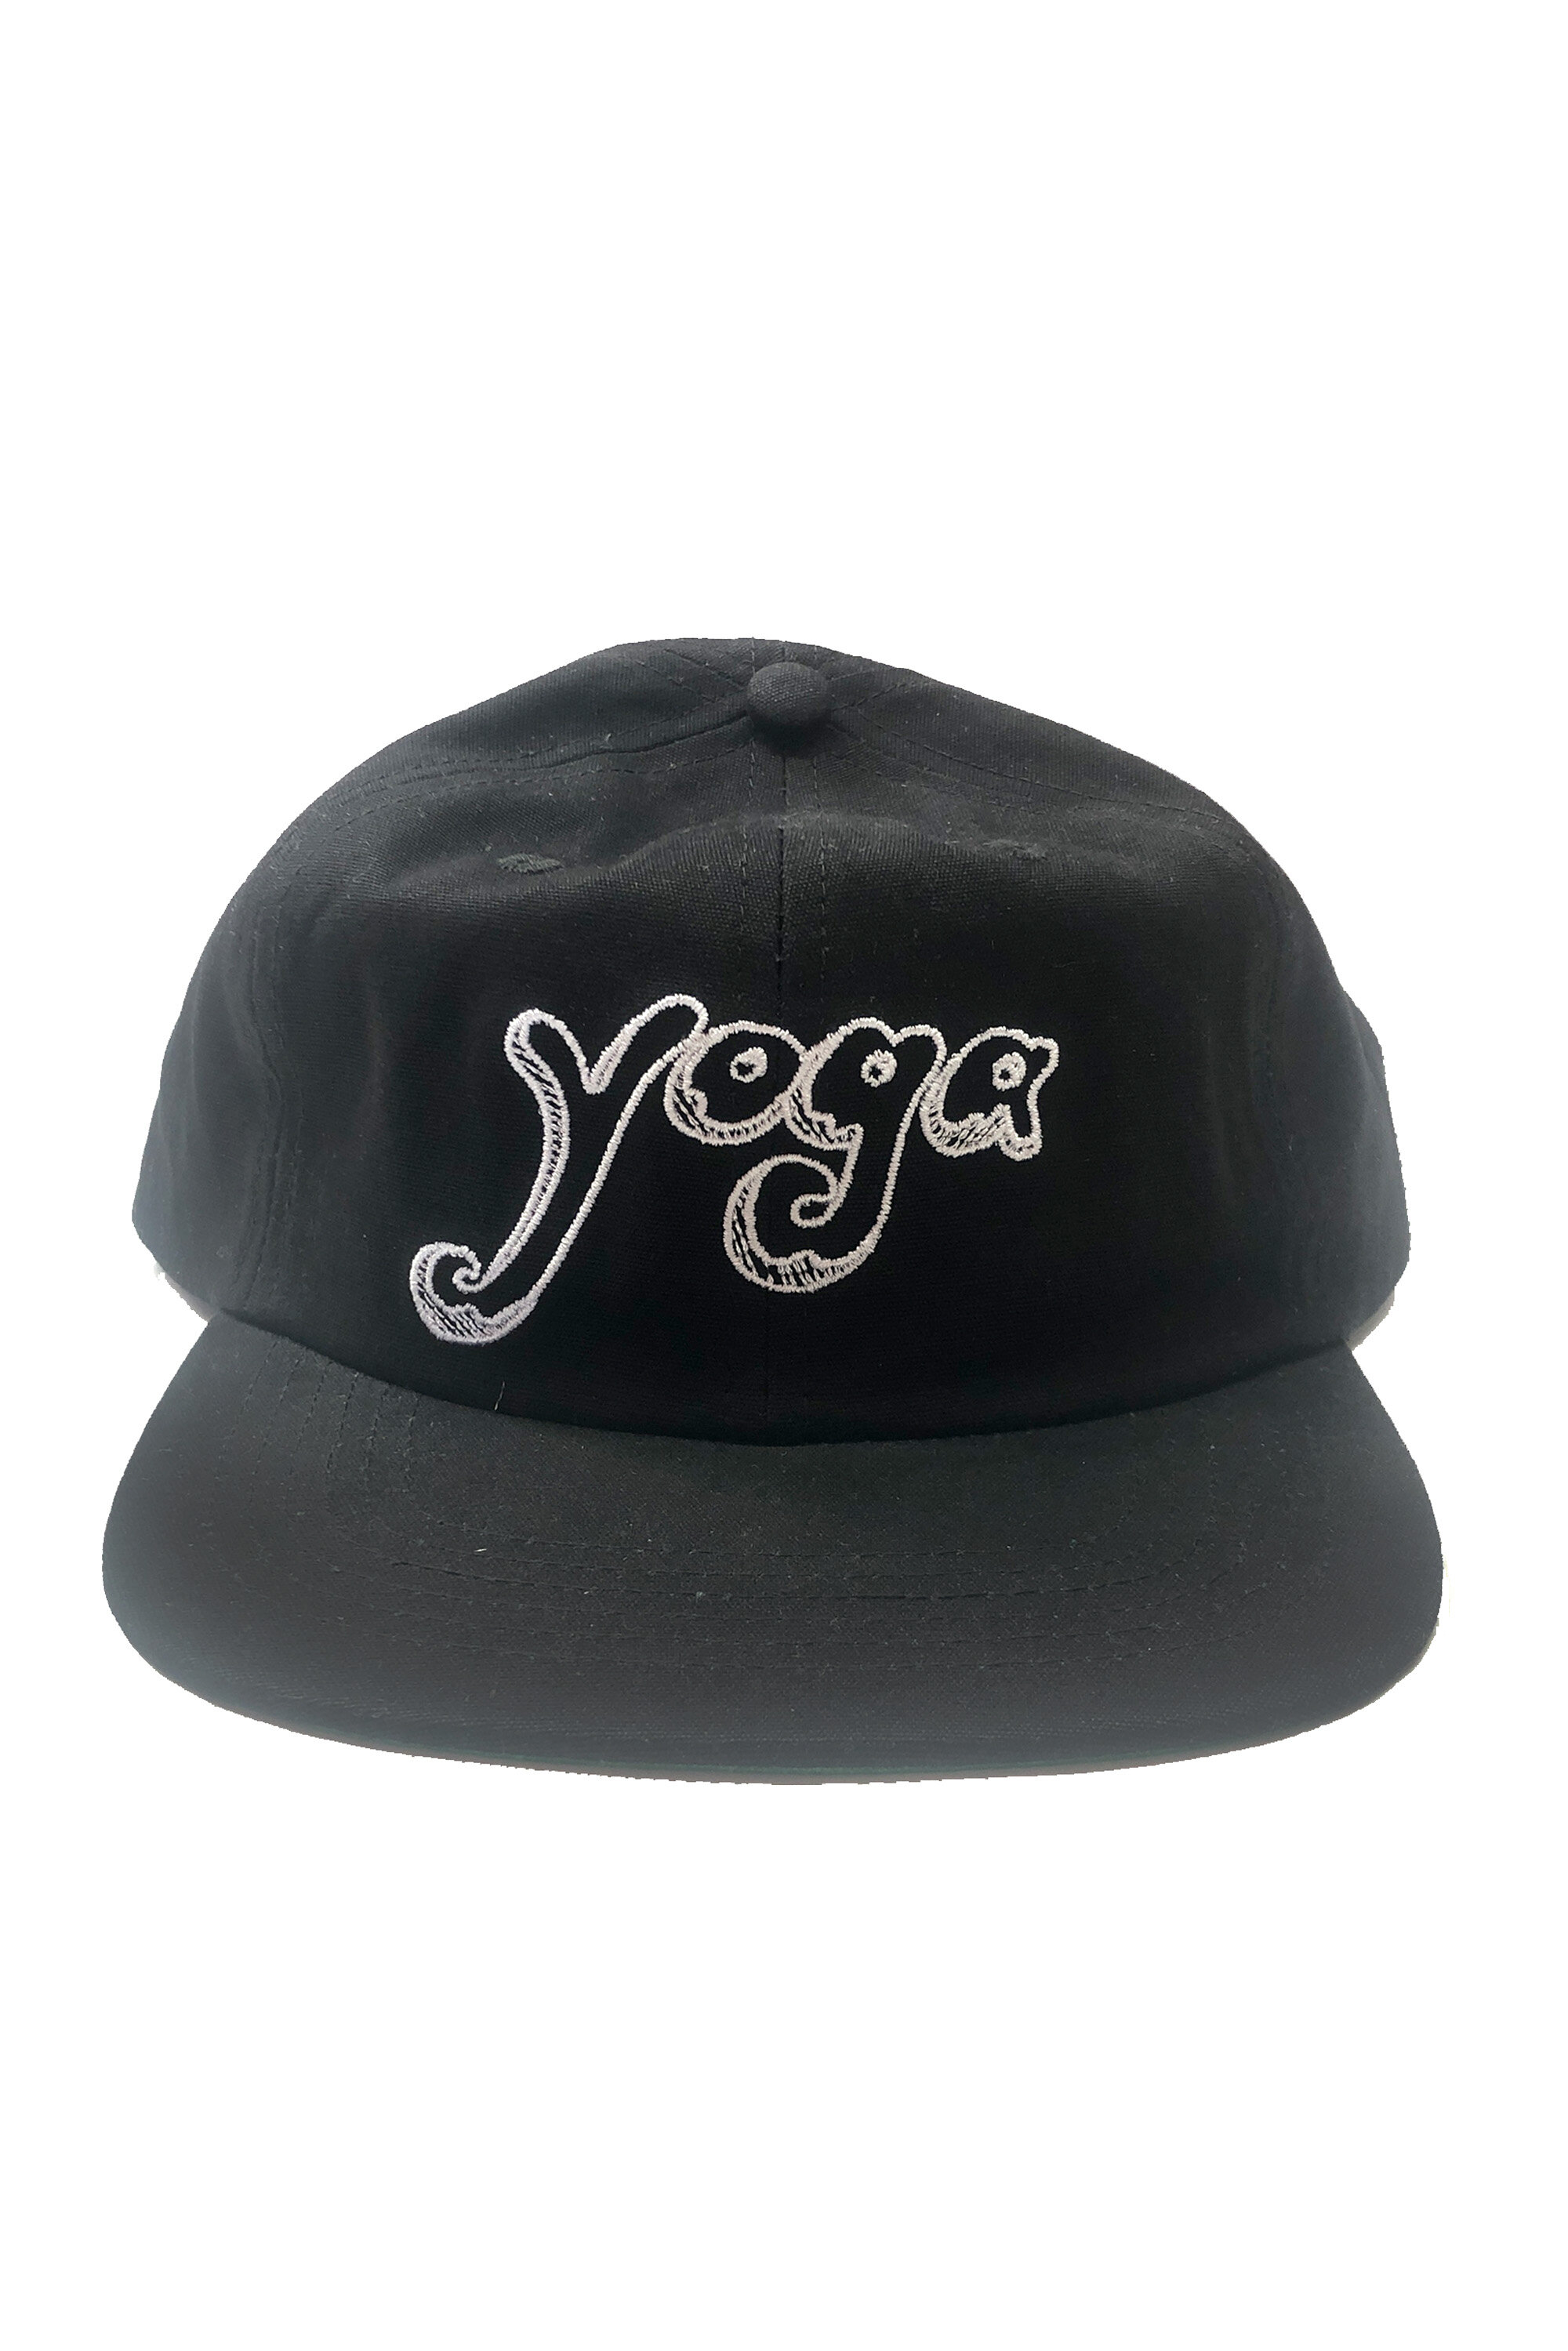 yoga cap